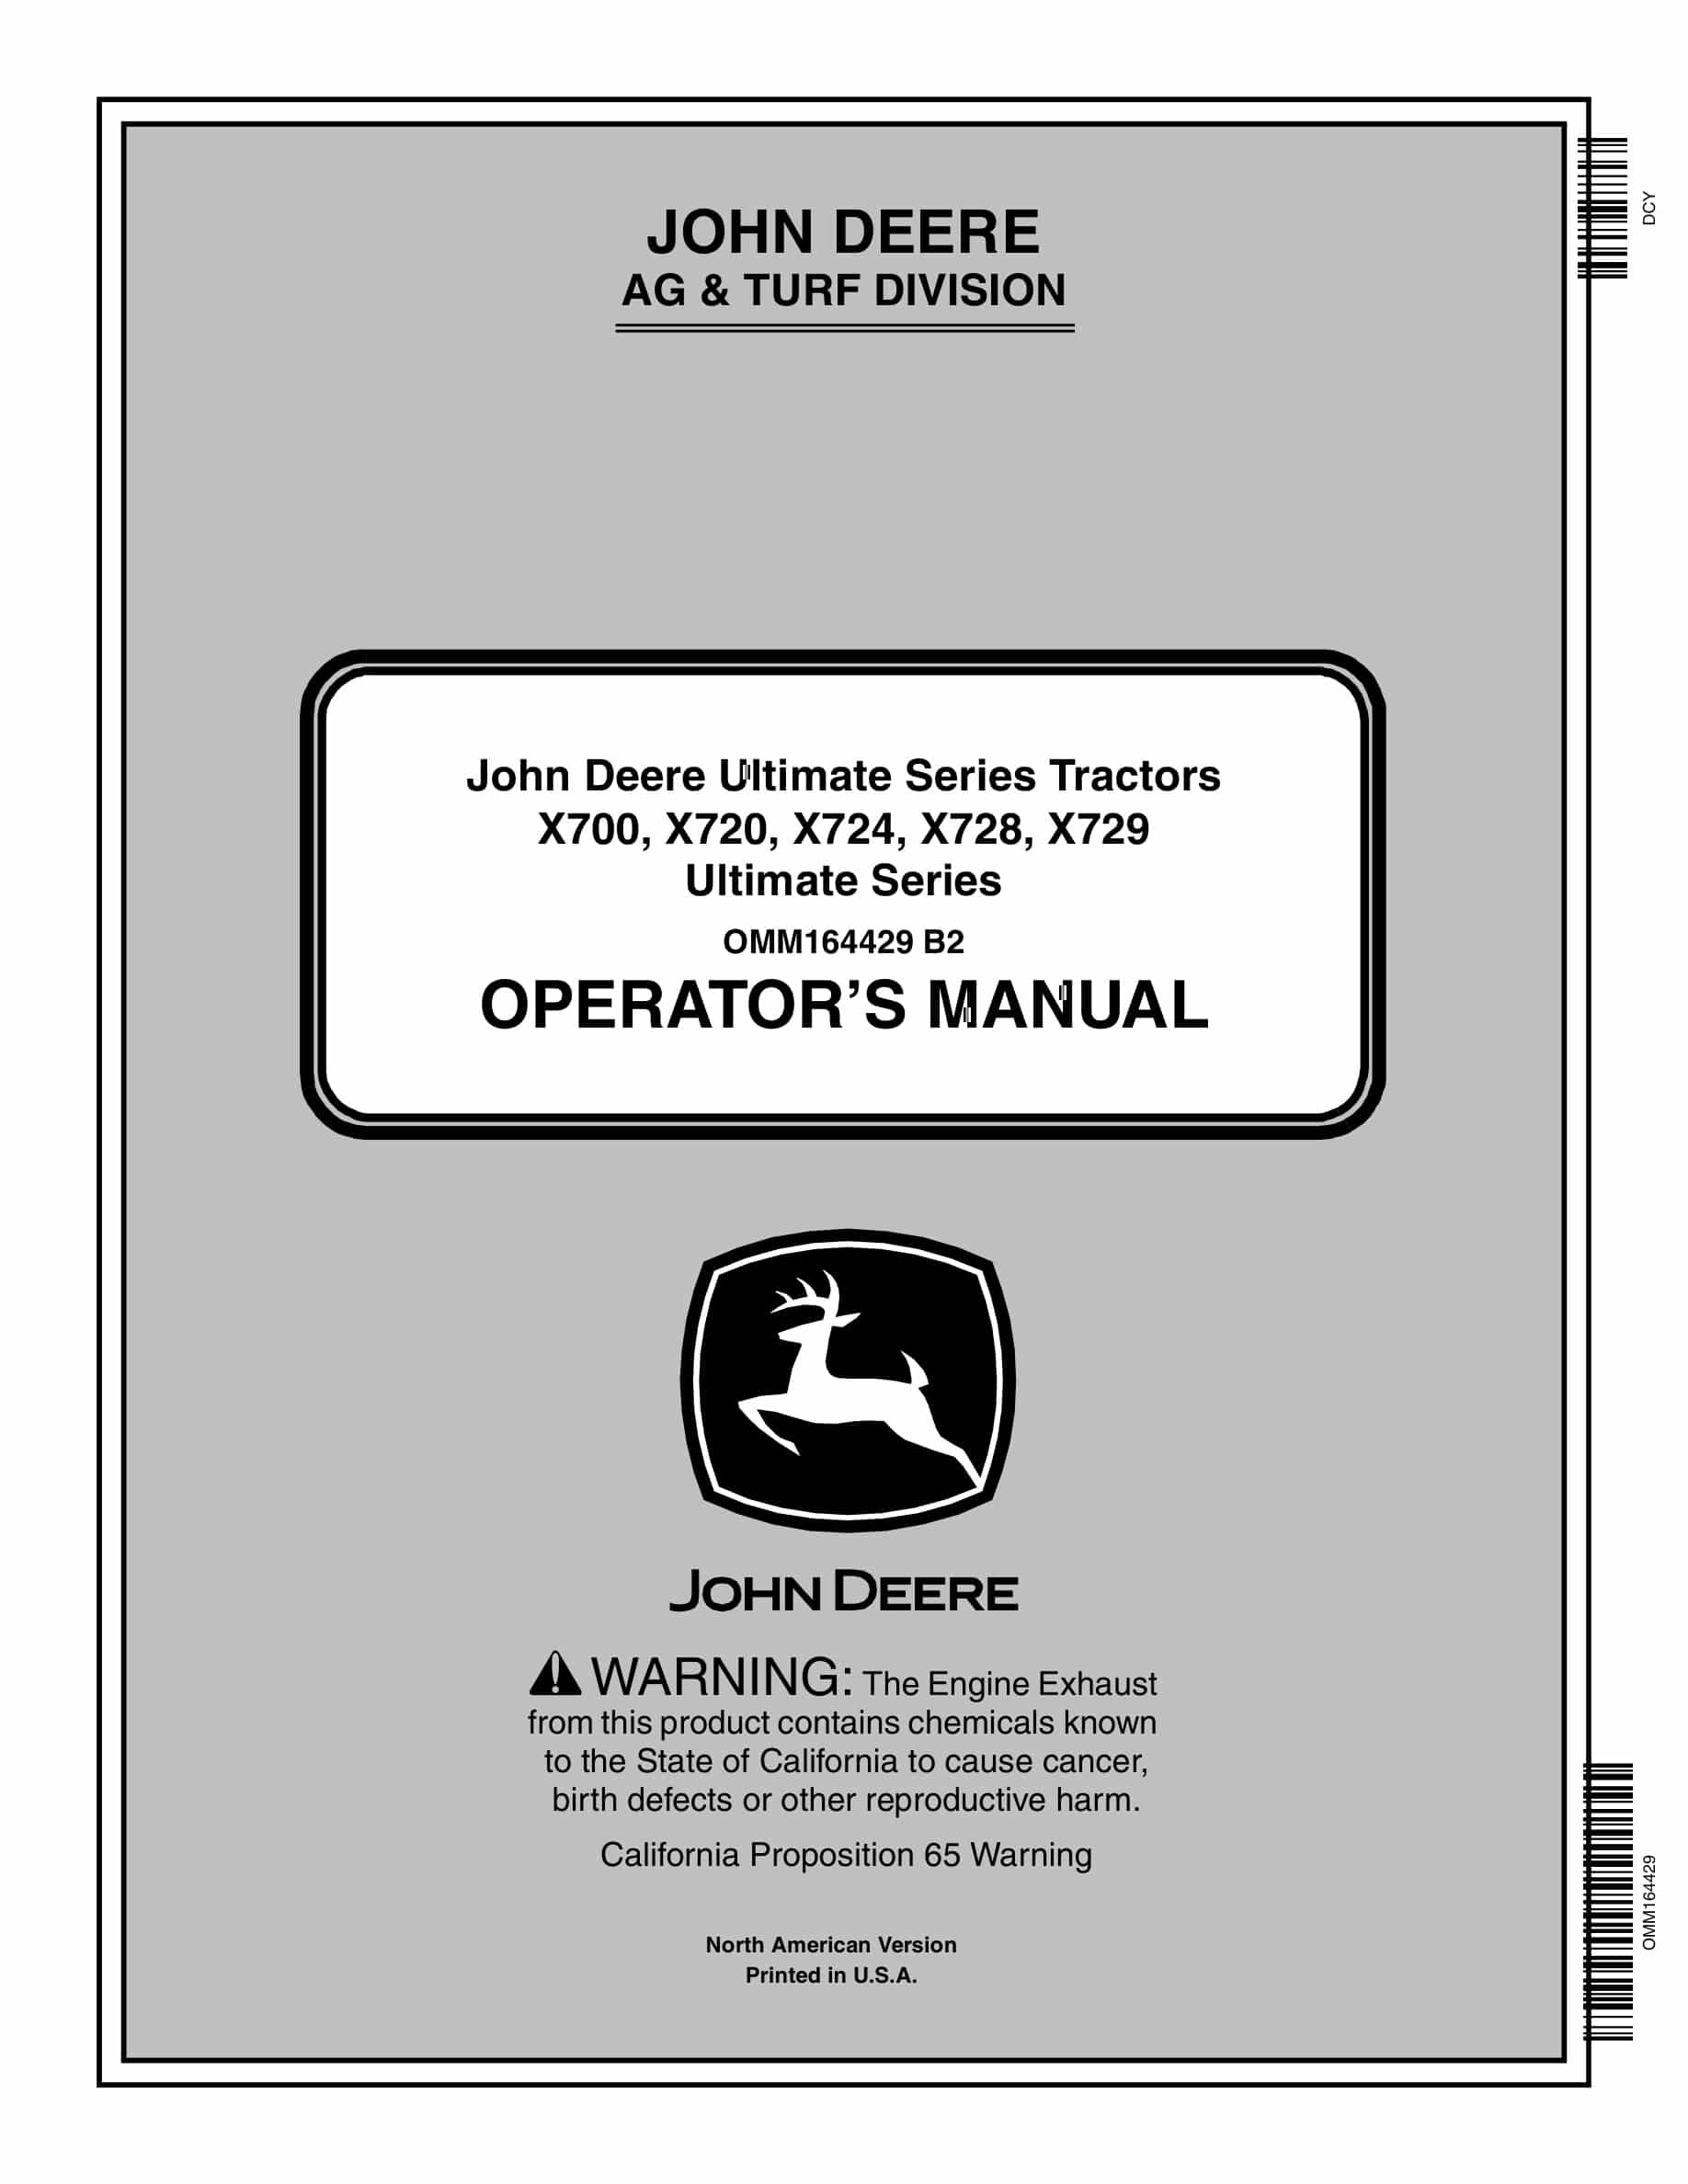 John Deere X700, X720, X724, X728, X729 Tractor Operator Manual OMM164429-1